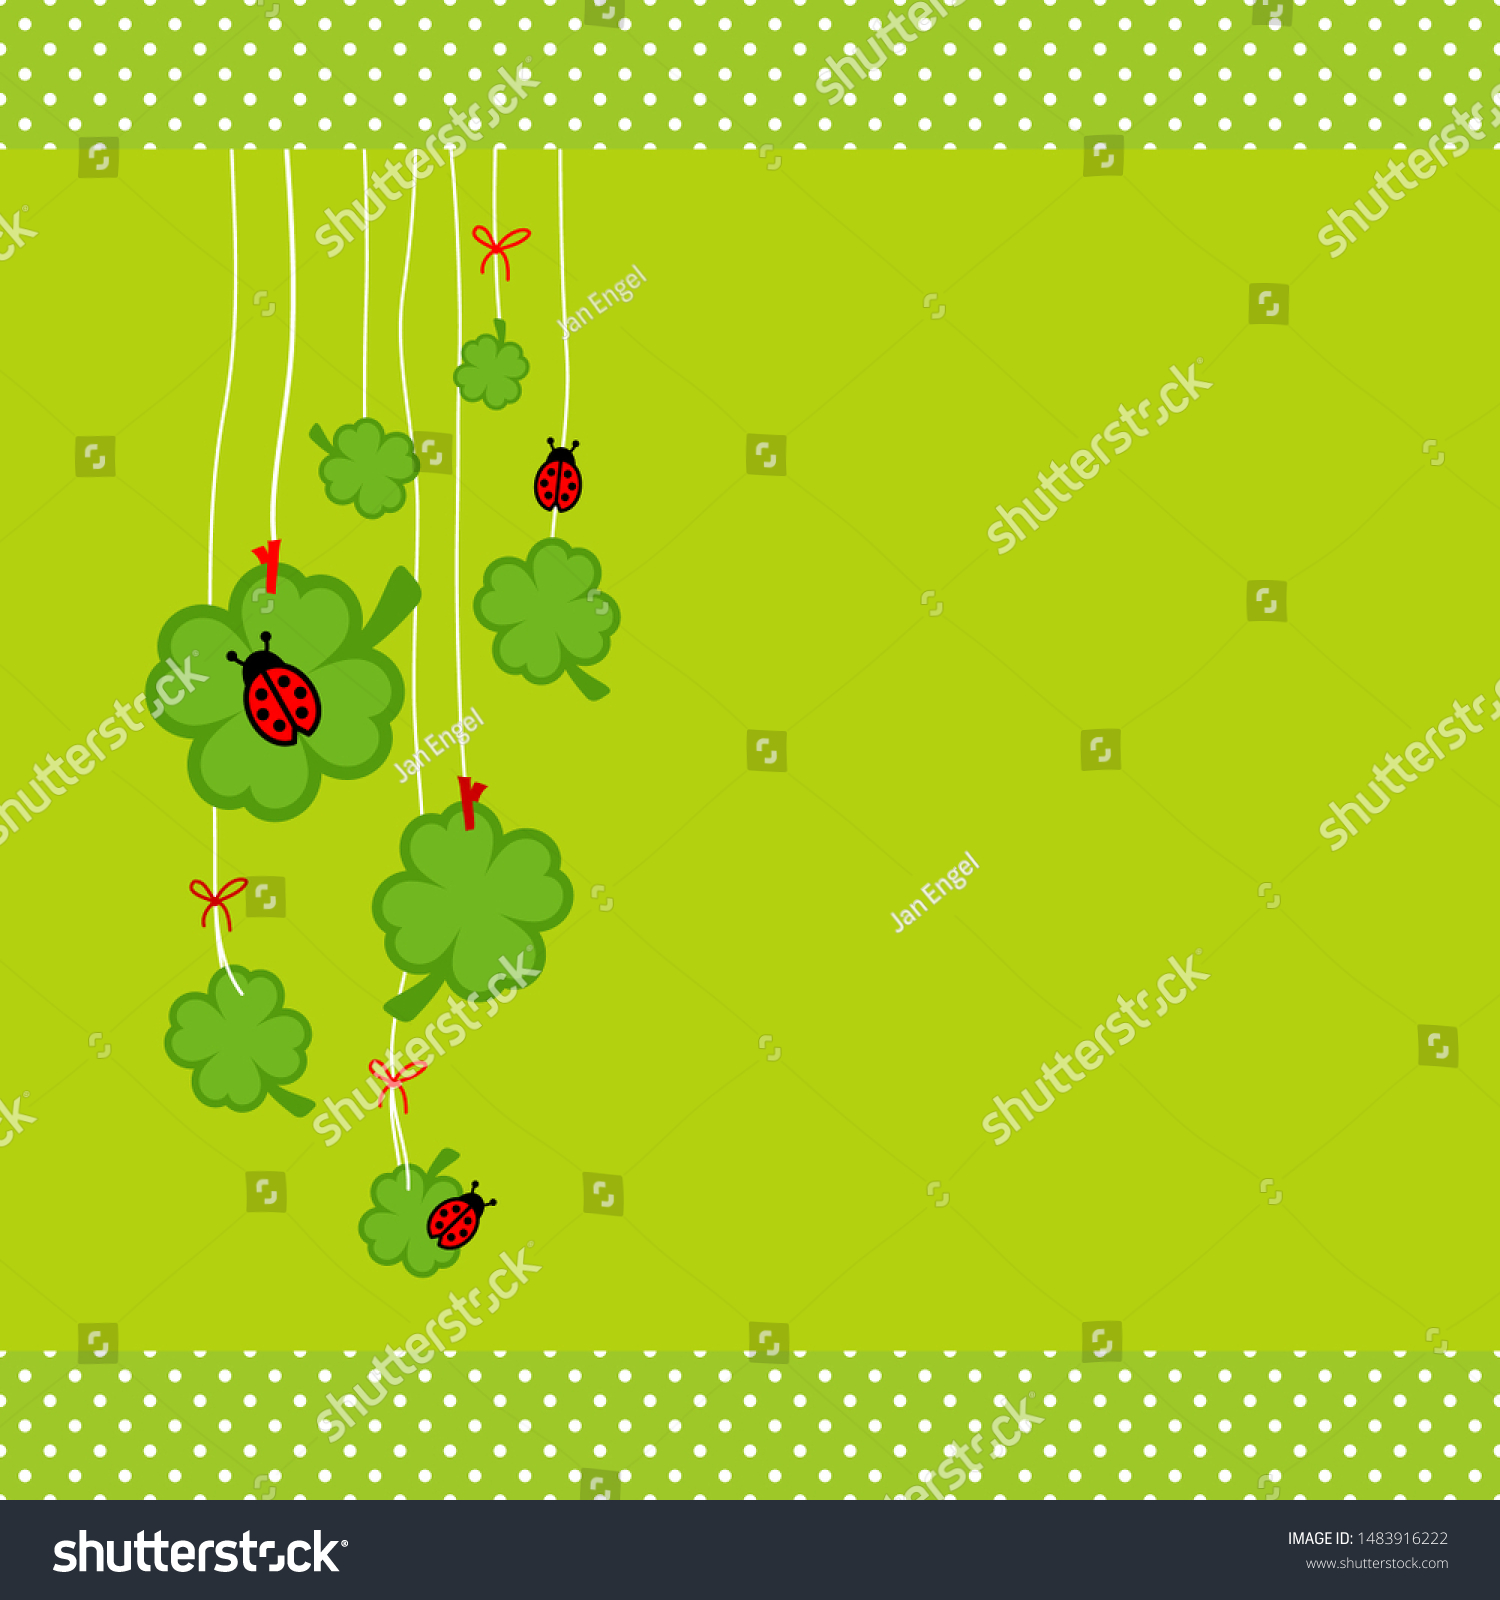 Left Hanging Shamrocks And Ladybugs Dots Border Green #1483916222